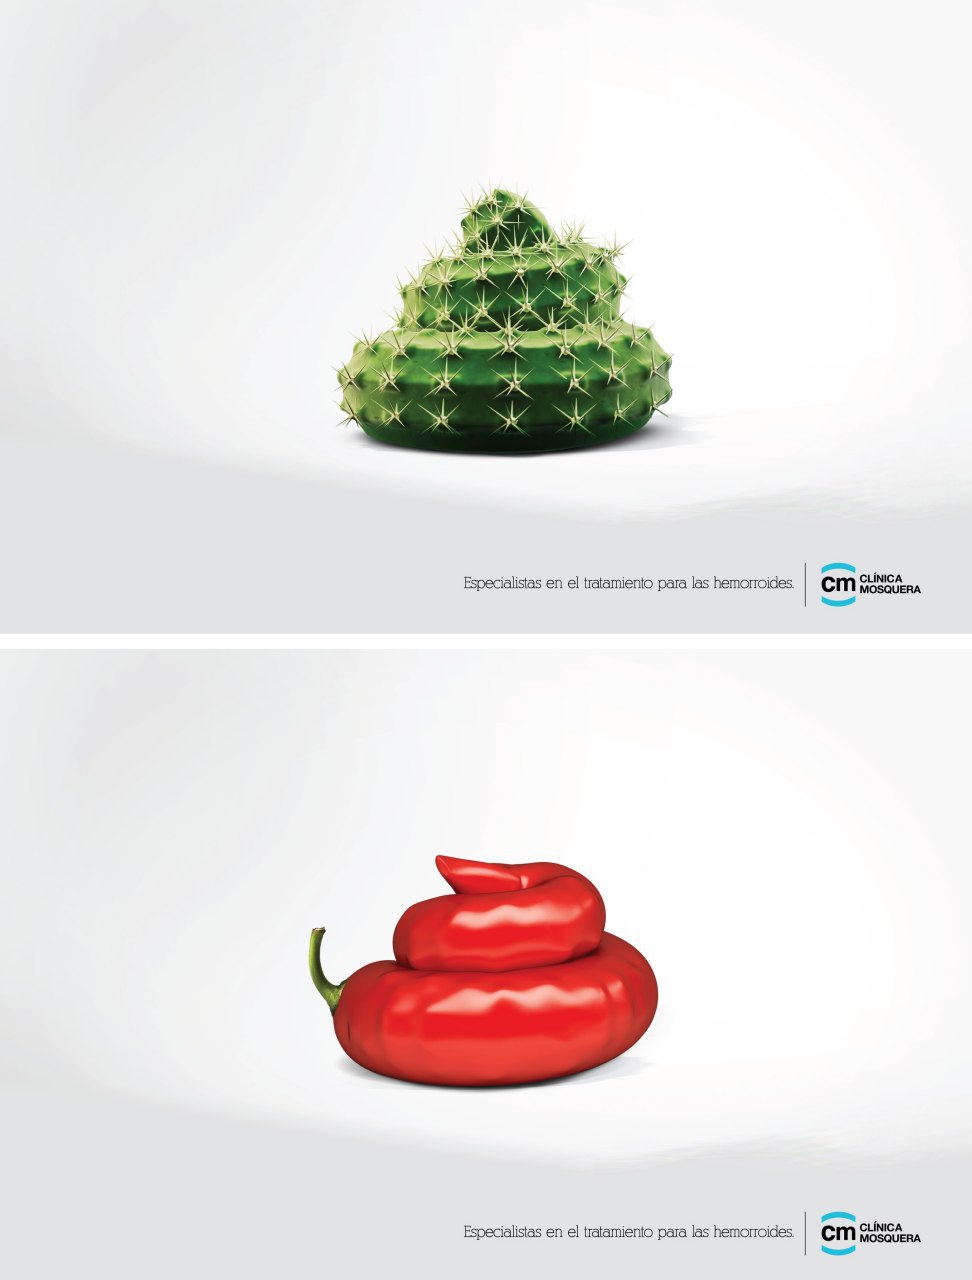 کمپین تبلیغاتی کلینیک پزشکی در اکوادور